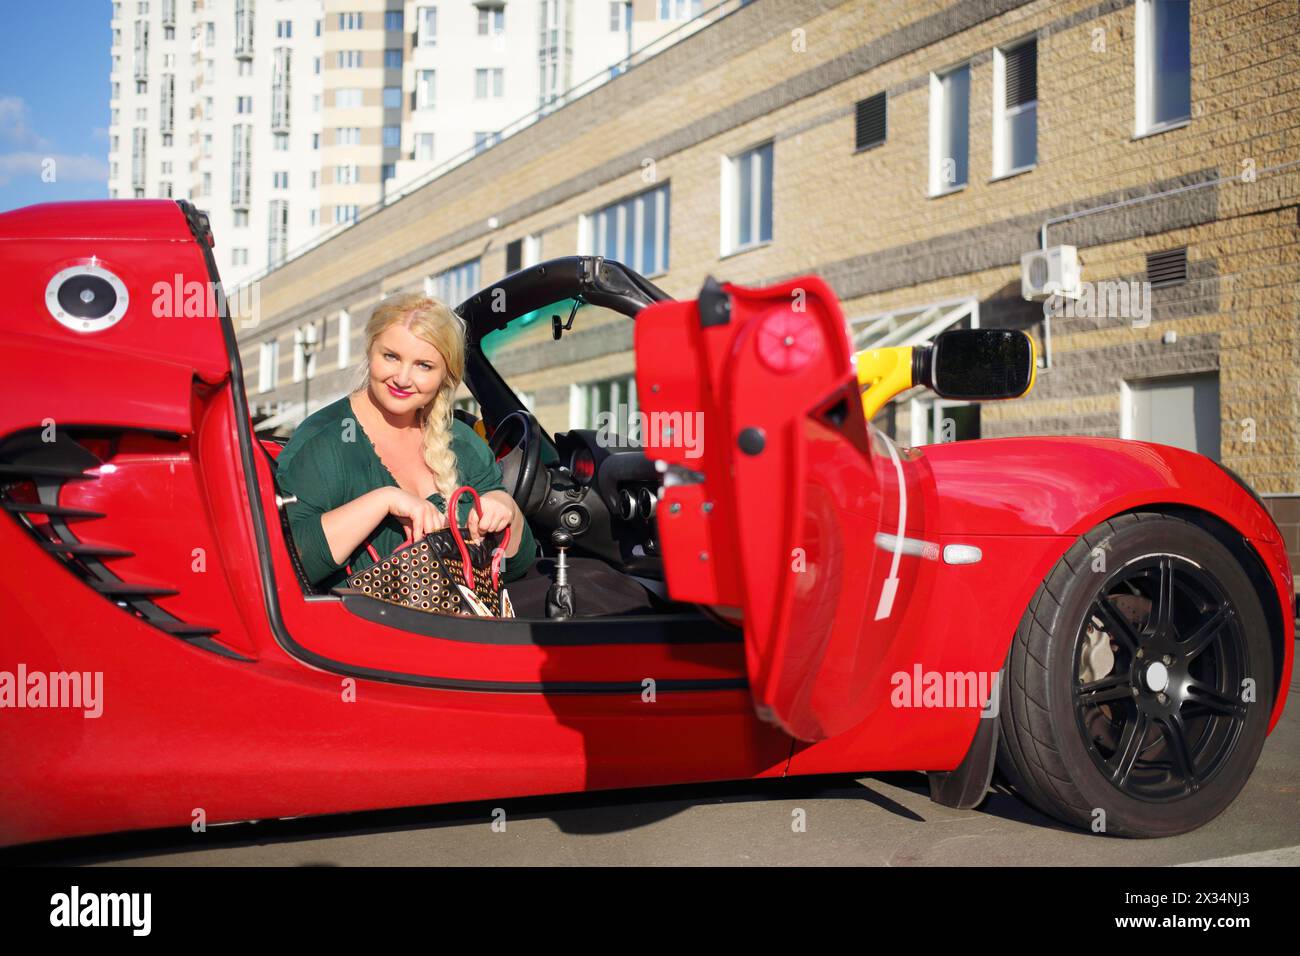 MOSKAU - 13. September 2015: Frau (mit Modellfreigabe) im Lotus-Cabriolet. Lotus Cars ist ein britischer Hersteller von Sport- und Rennwagen Stockfoto